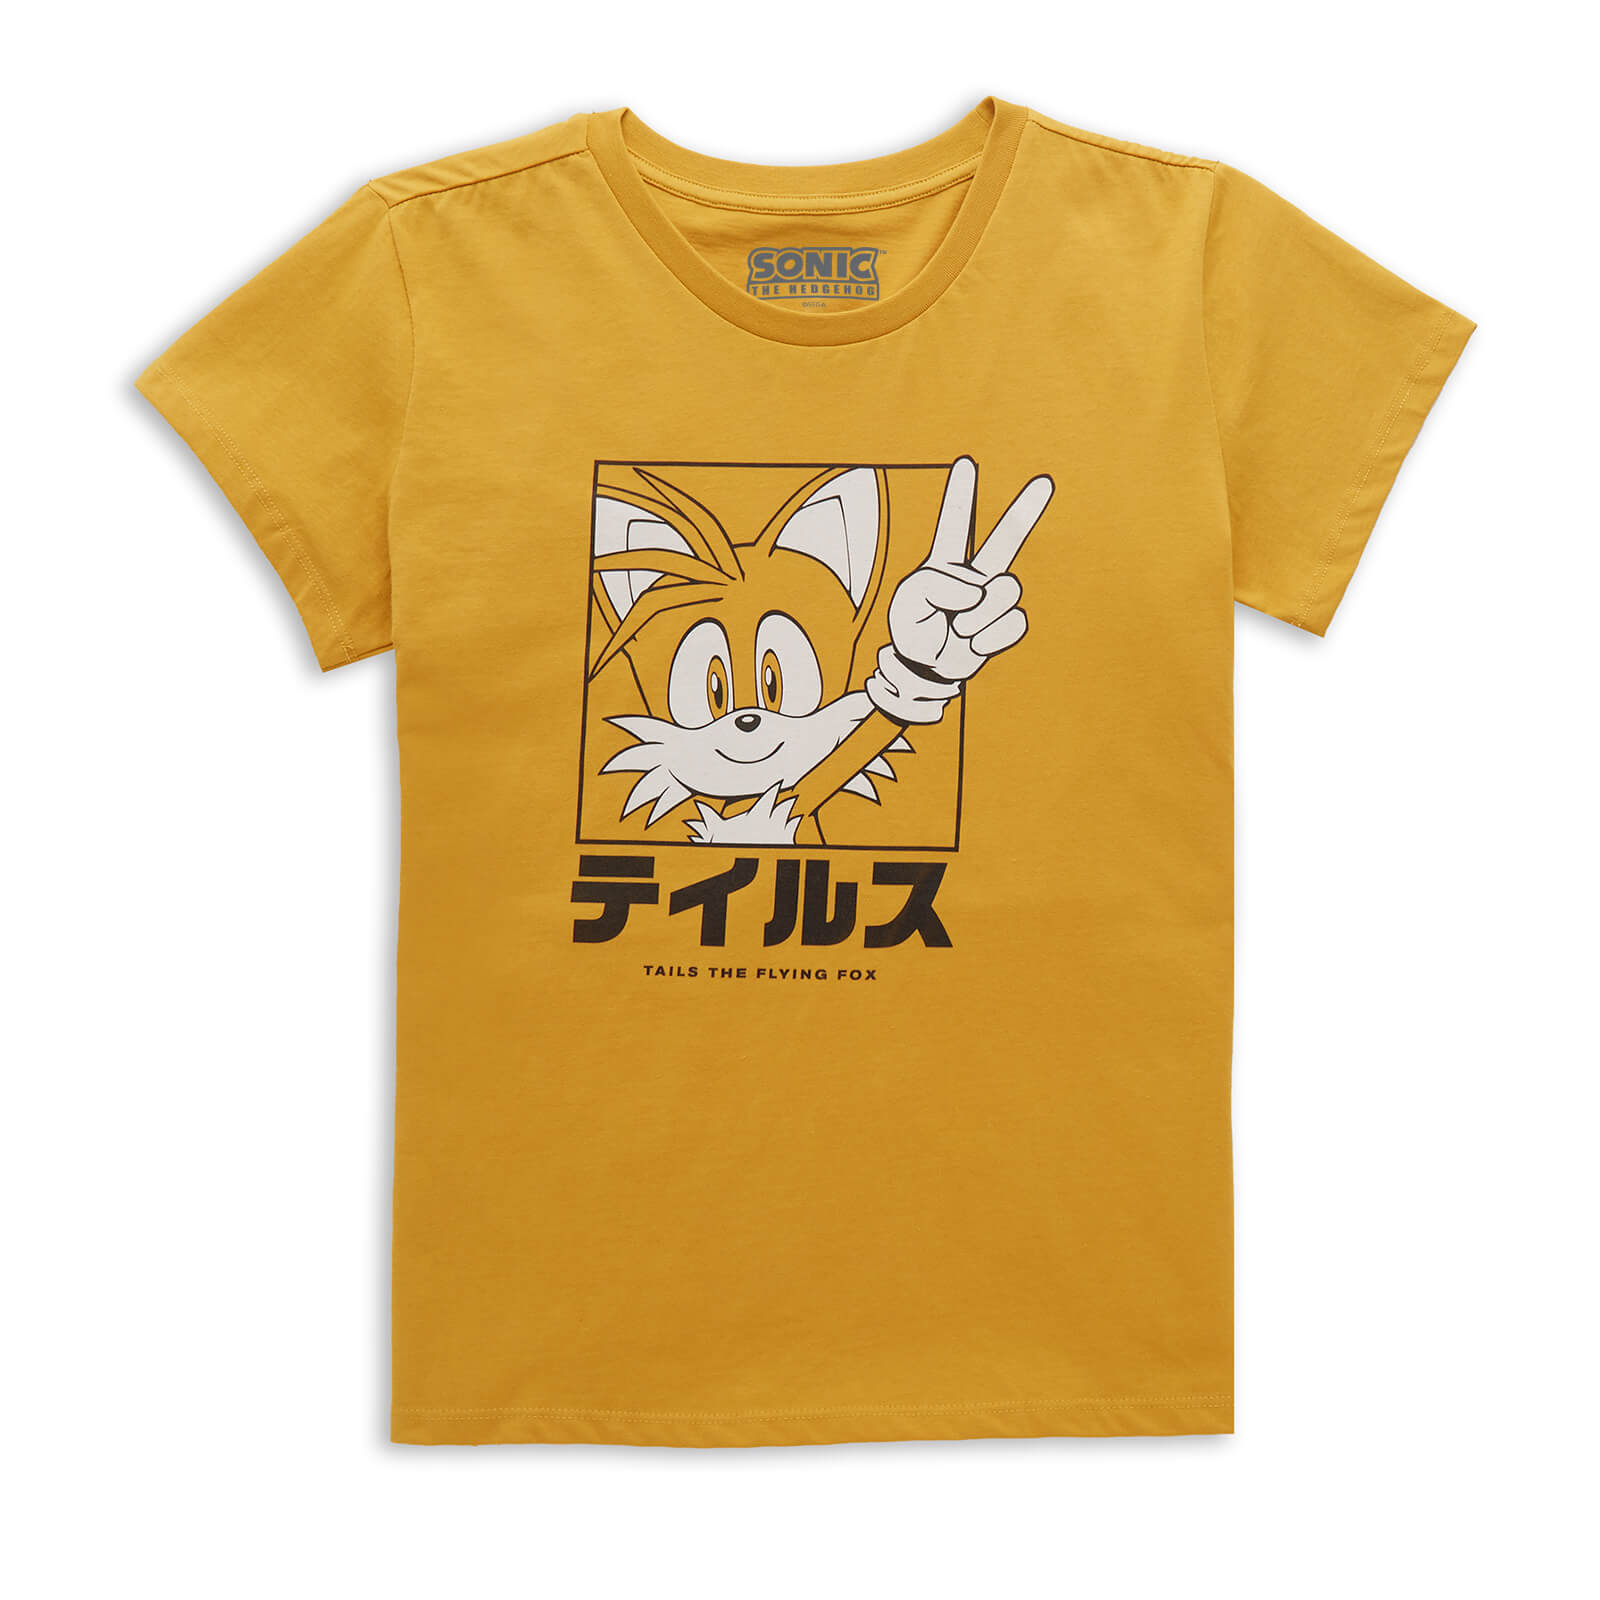 Sonic The Hedgehog Tails Katakana Women's T-Shirt - Mustard - XS